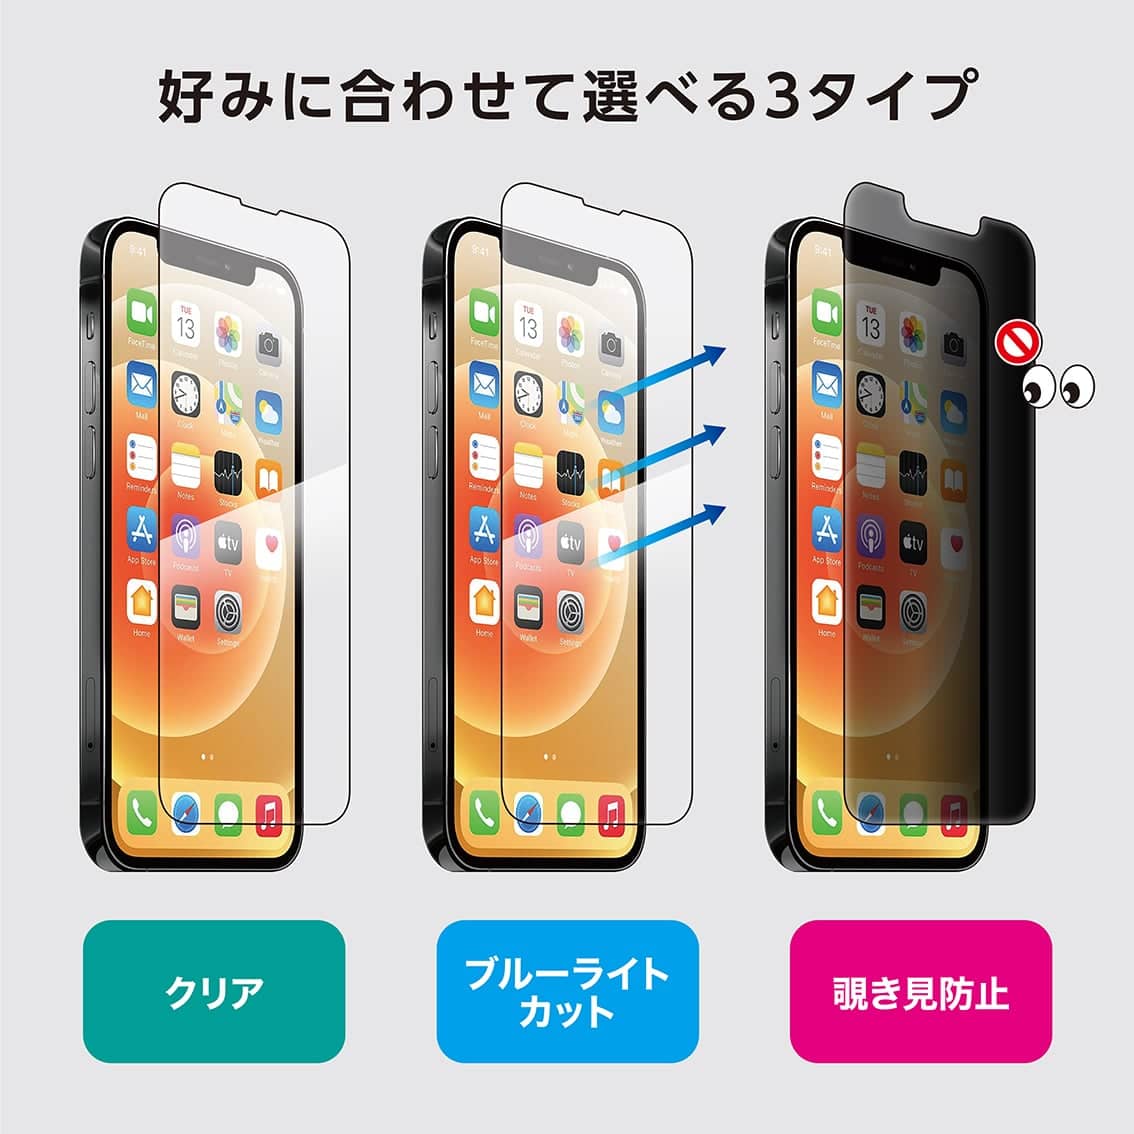 新型 iPhone13 Pro Max 対応 超薄 0.15mm ガラスフィルム クリア ブルーライトカット 覗き見防止 iPhone 2021年モデル 6.7インチ